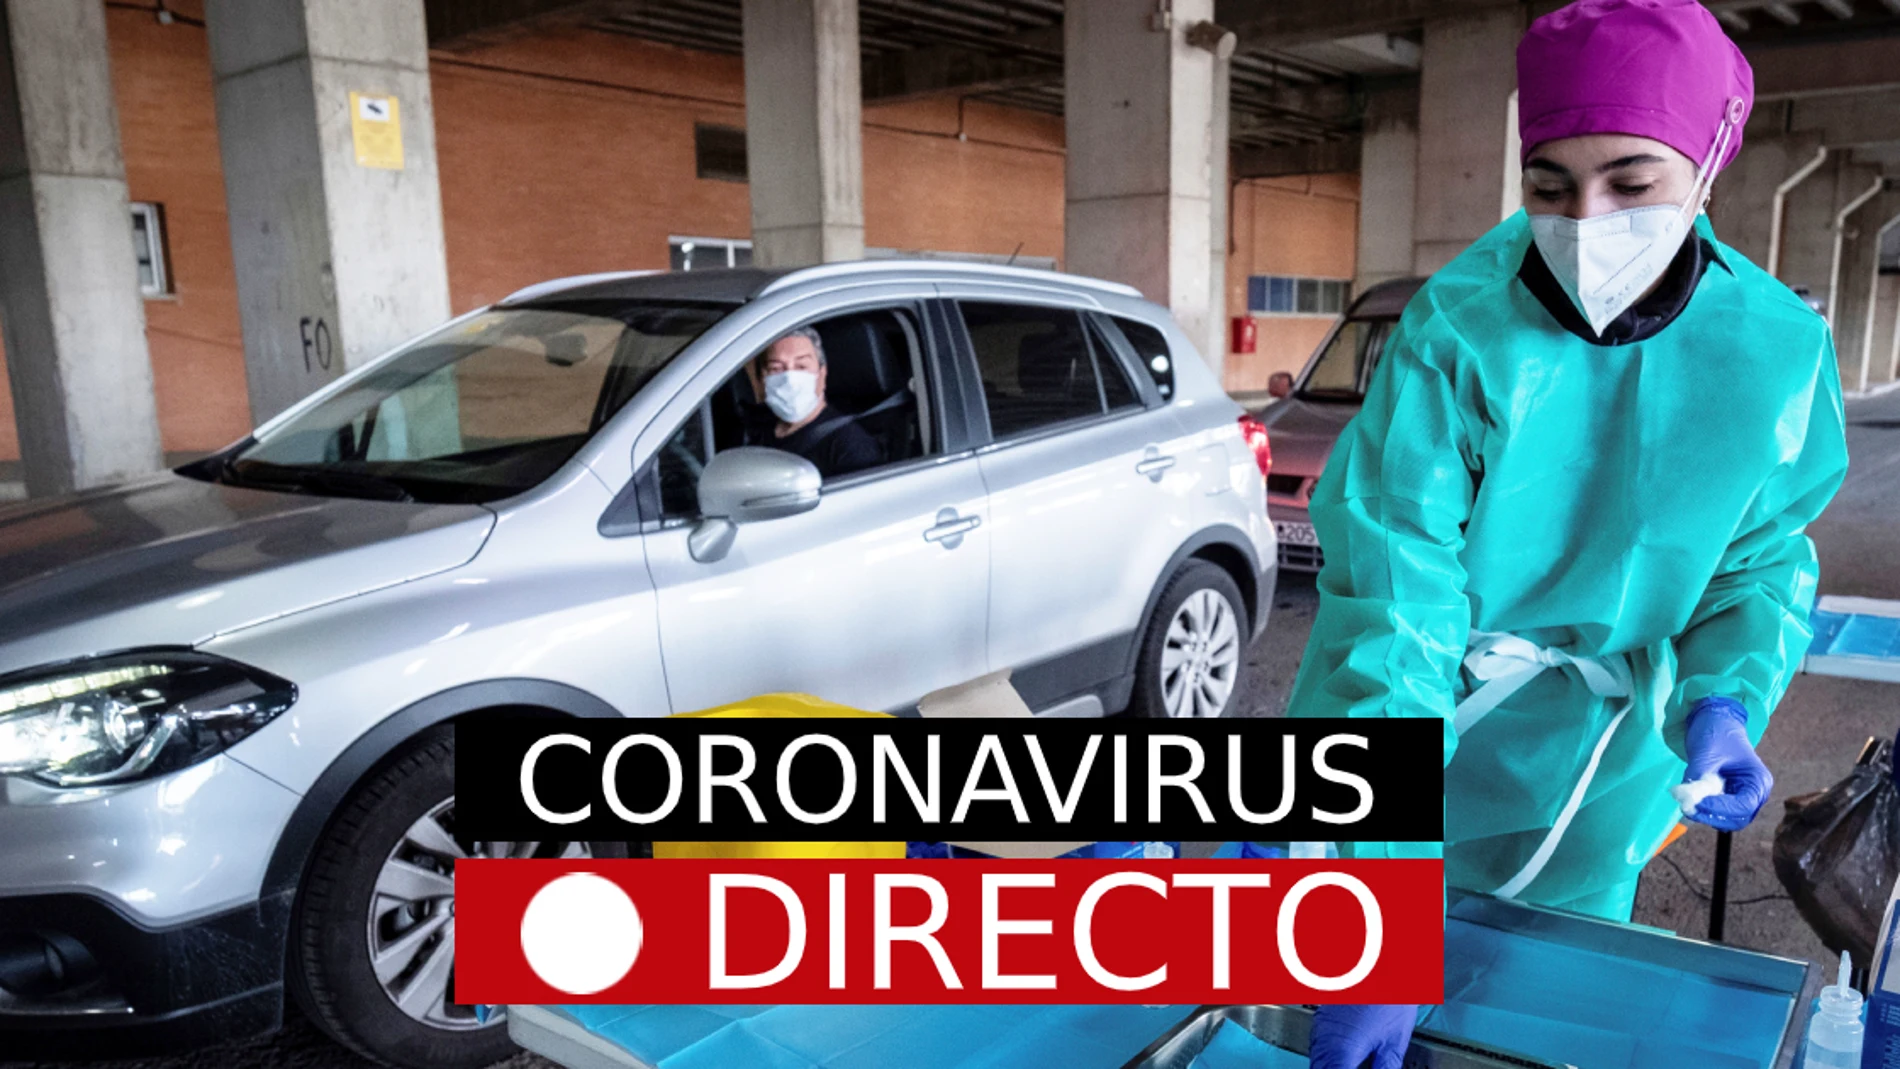 Coronavirus última hora en España de las nuevas medidas, restricciones y toque de queda por COVID, hoy